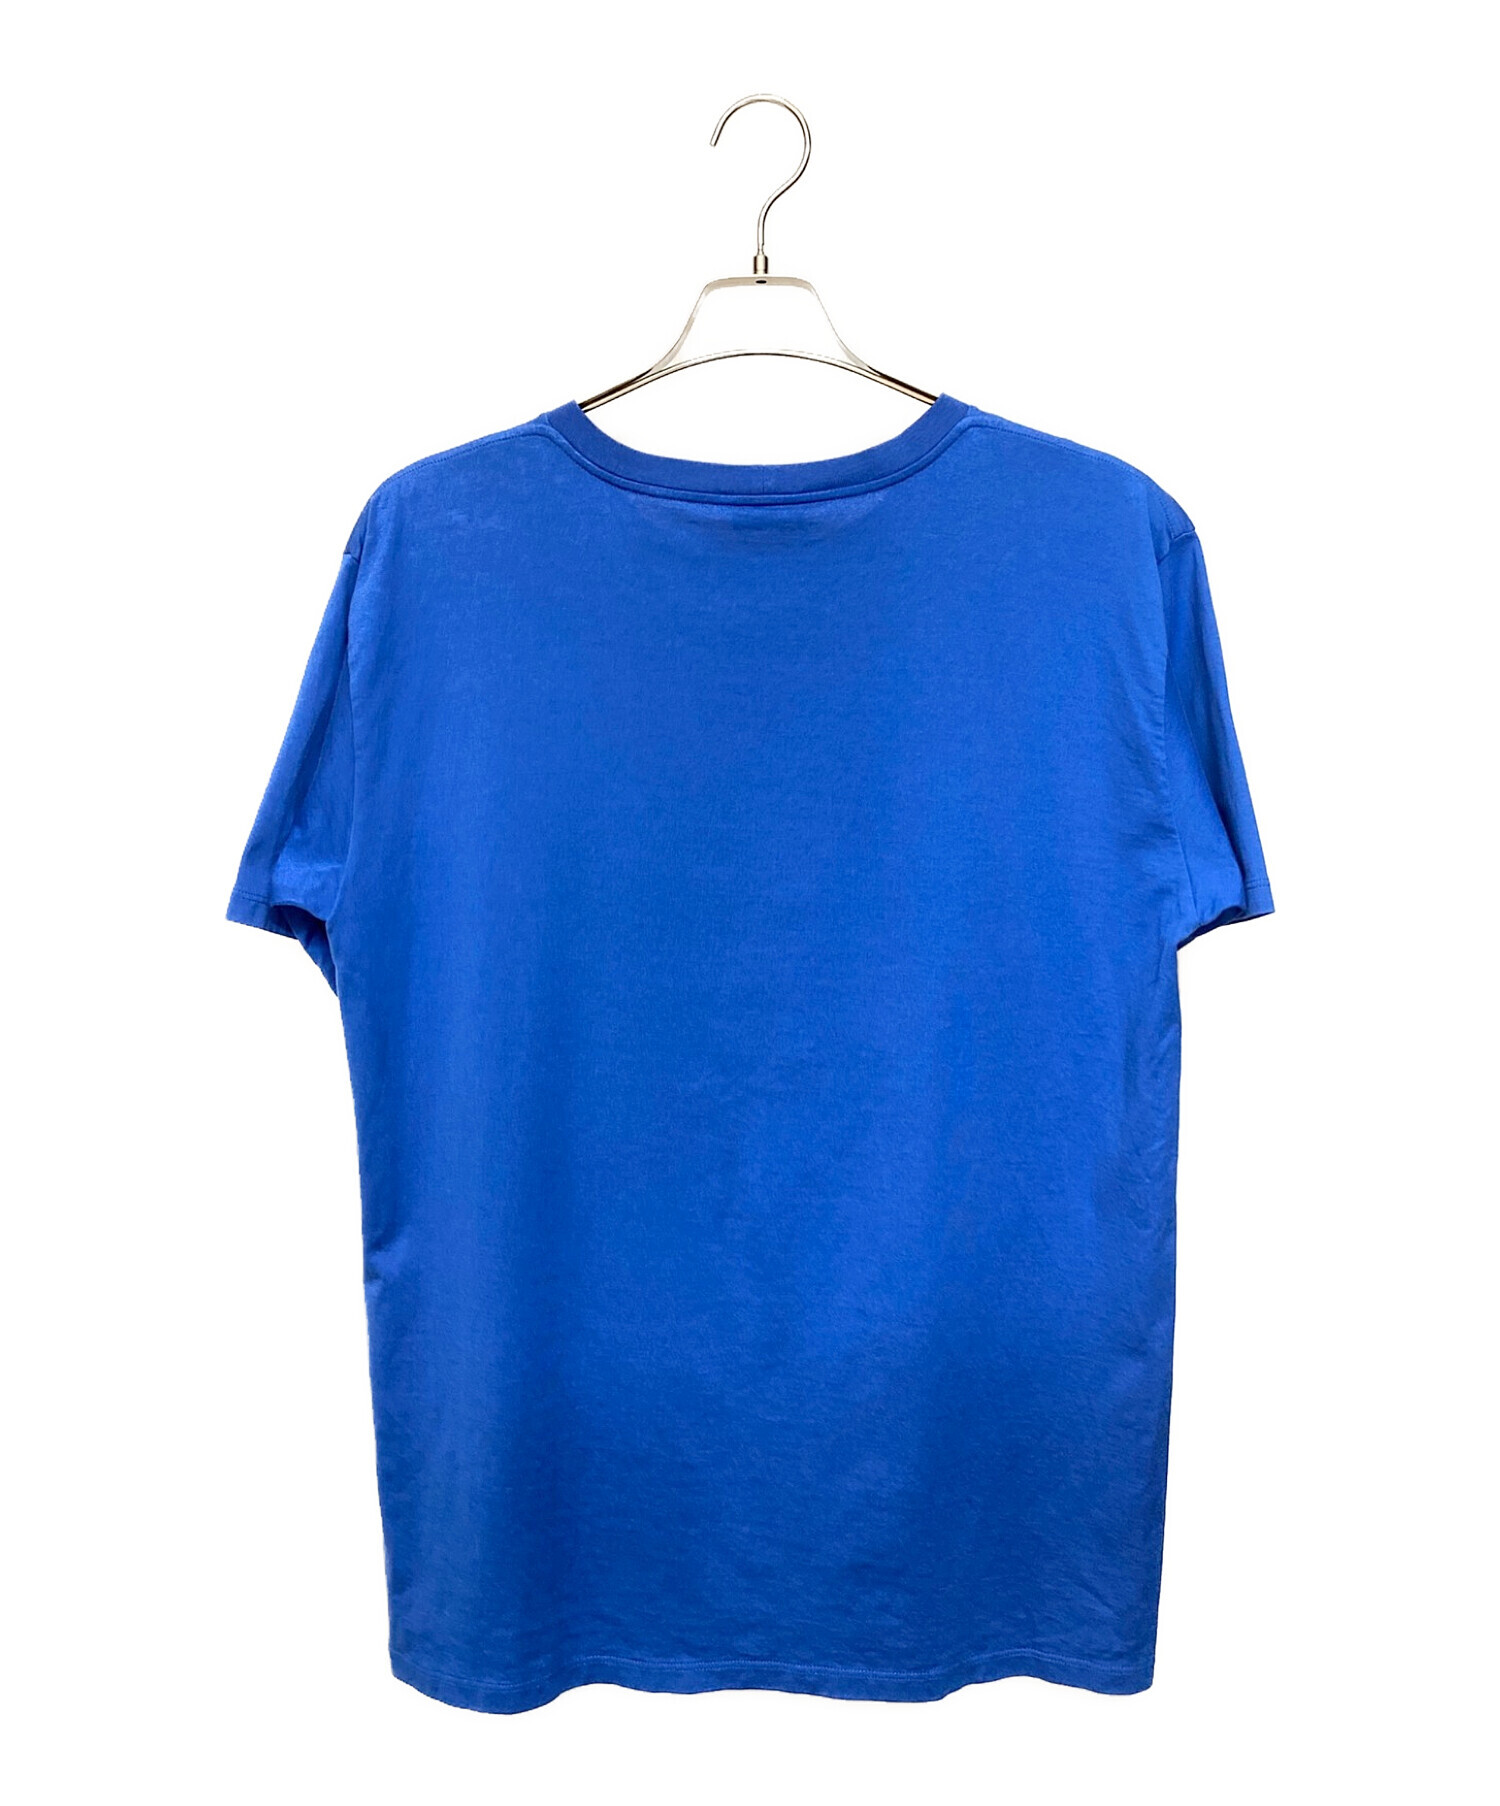 CELINE (セリーヌ) ルーズロゴプリントTシャツ ロイヤルブルー サイズ:S